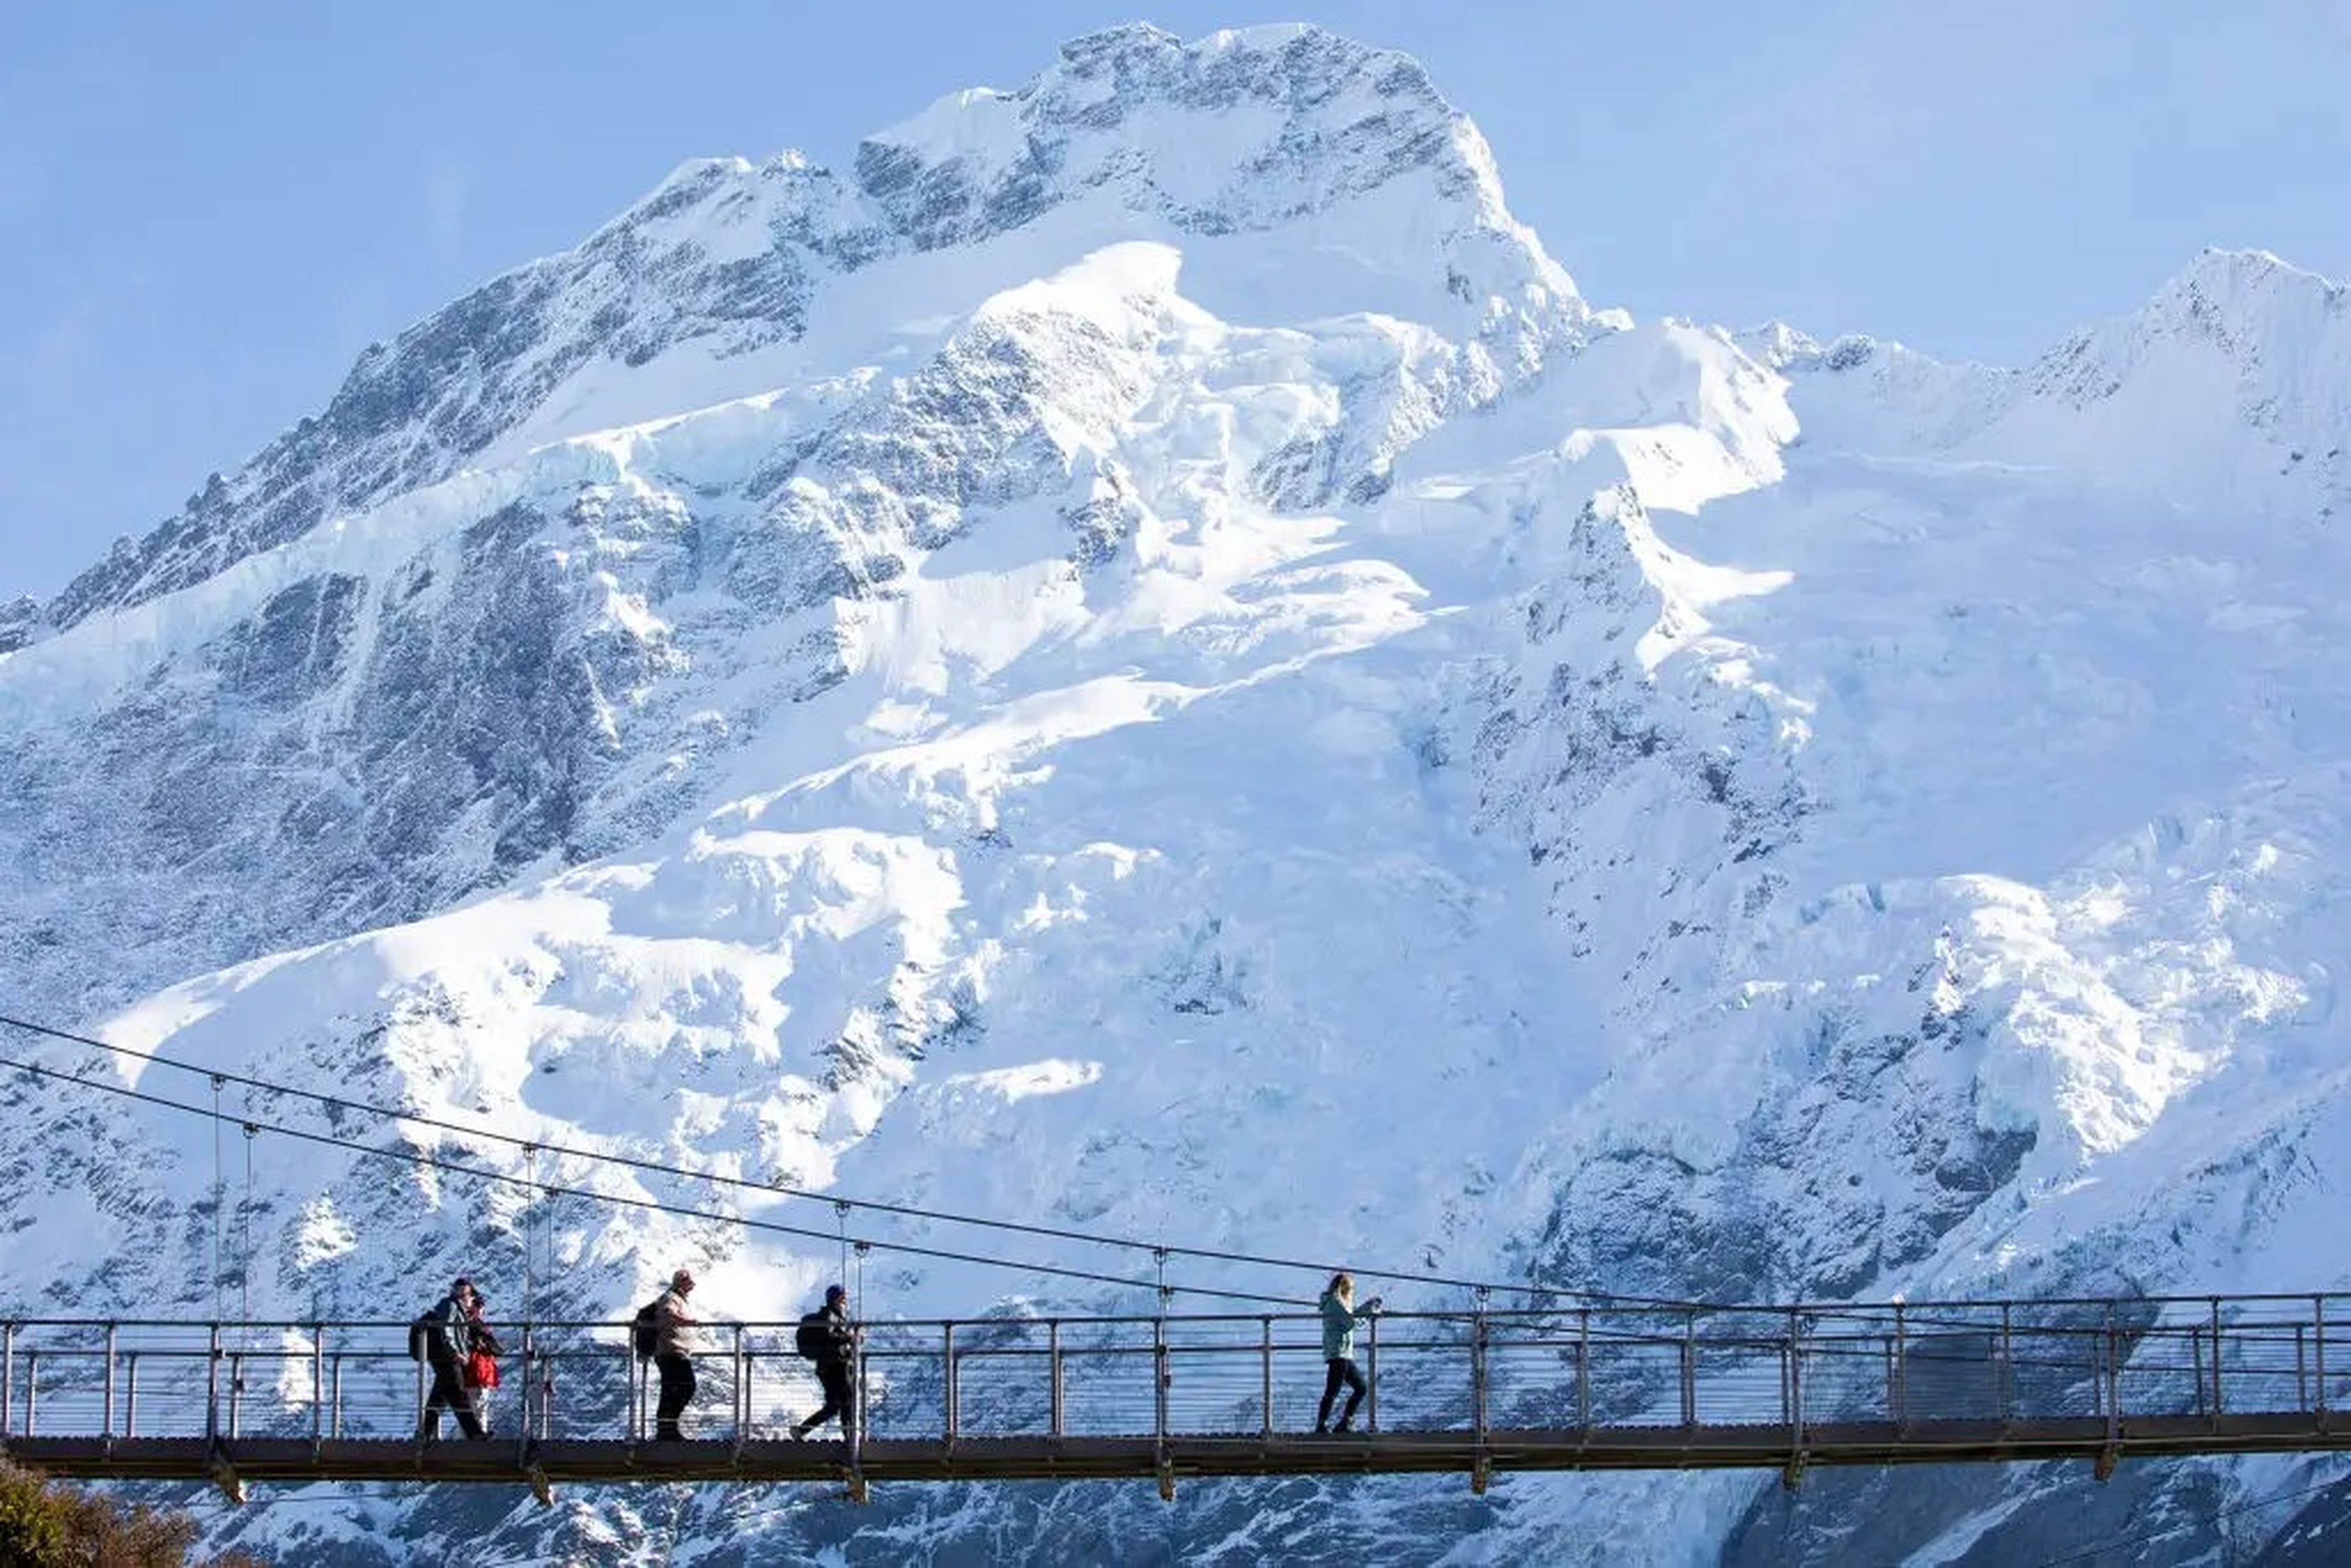 
El Parque Nacional Aoraki/Mount Cook en la Isla Sur, Nueva Zelanda, tiene algunas de las montañas más altas y los glaciares más largos.